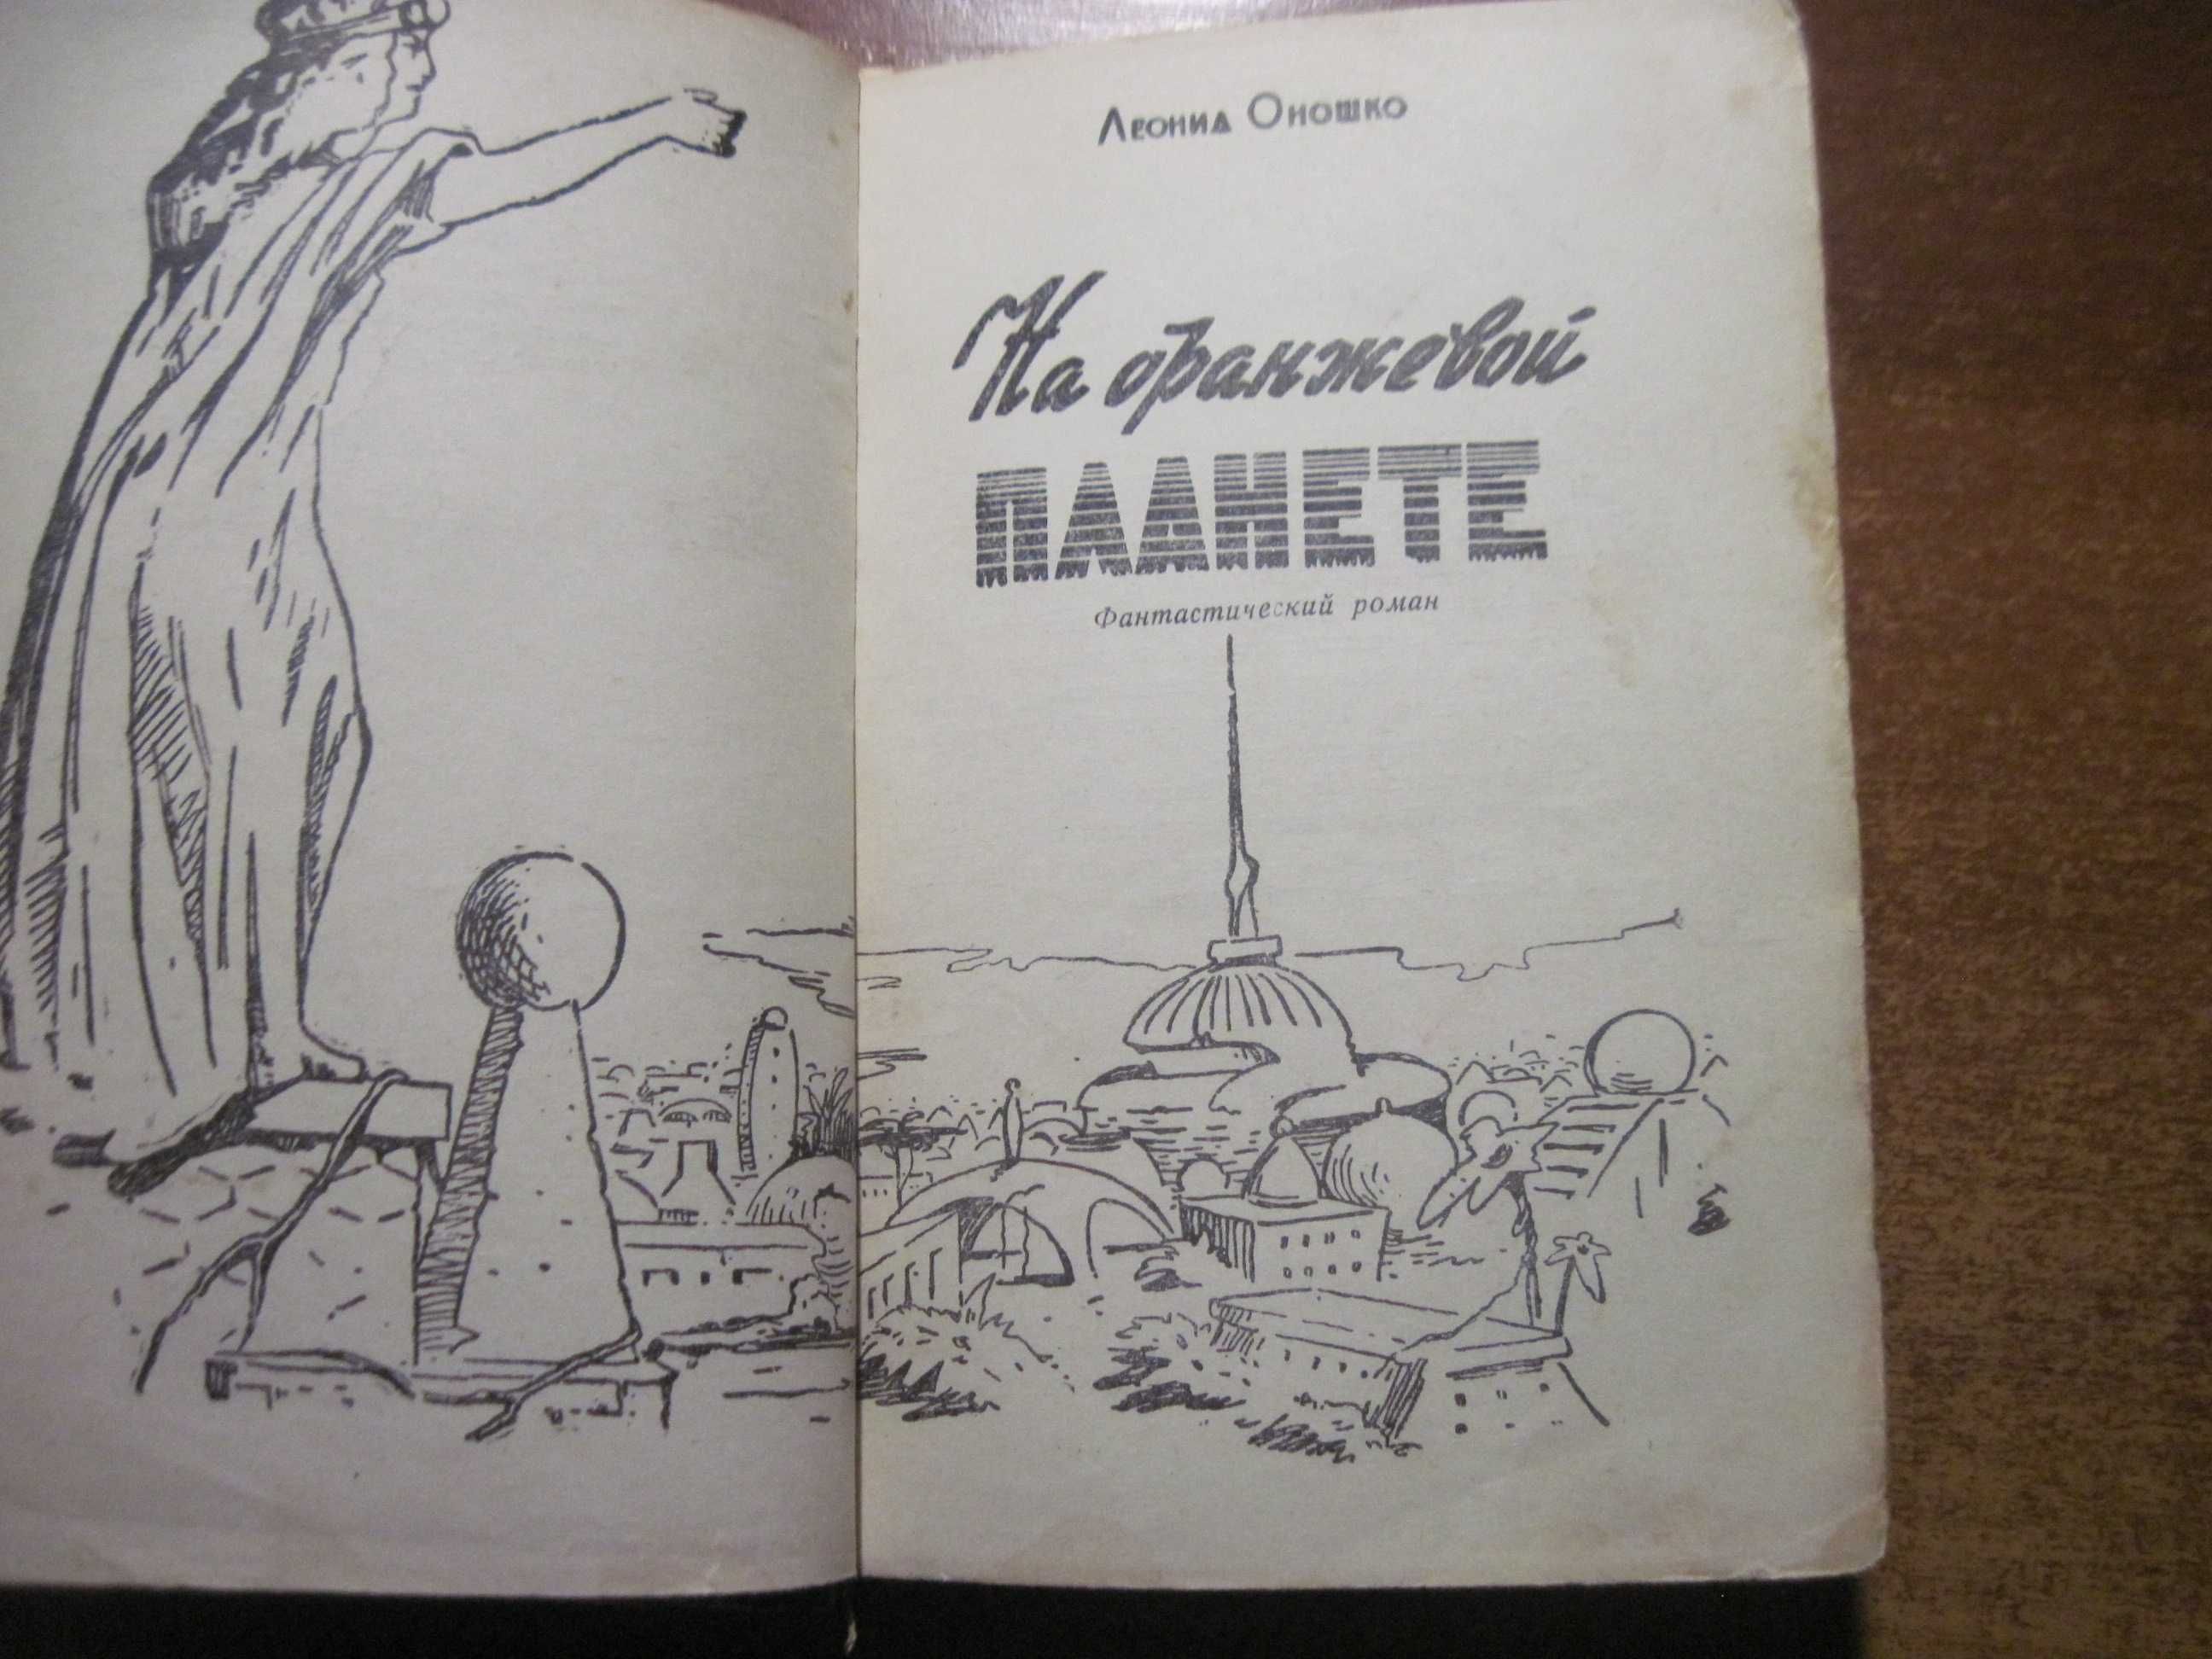 Л Оношко На оранжевой планете Фантастический роман 1958 Днепропетровск